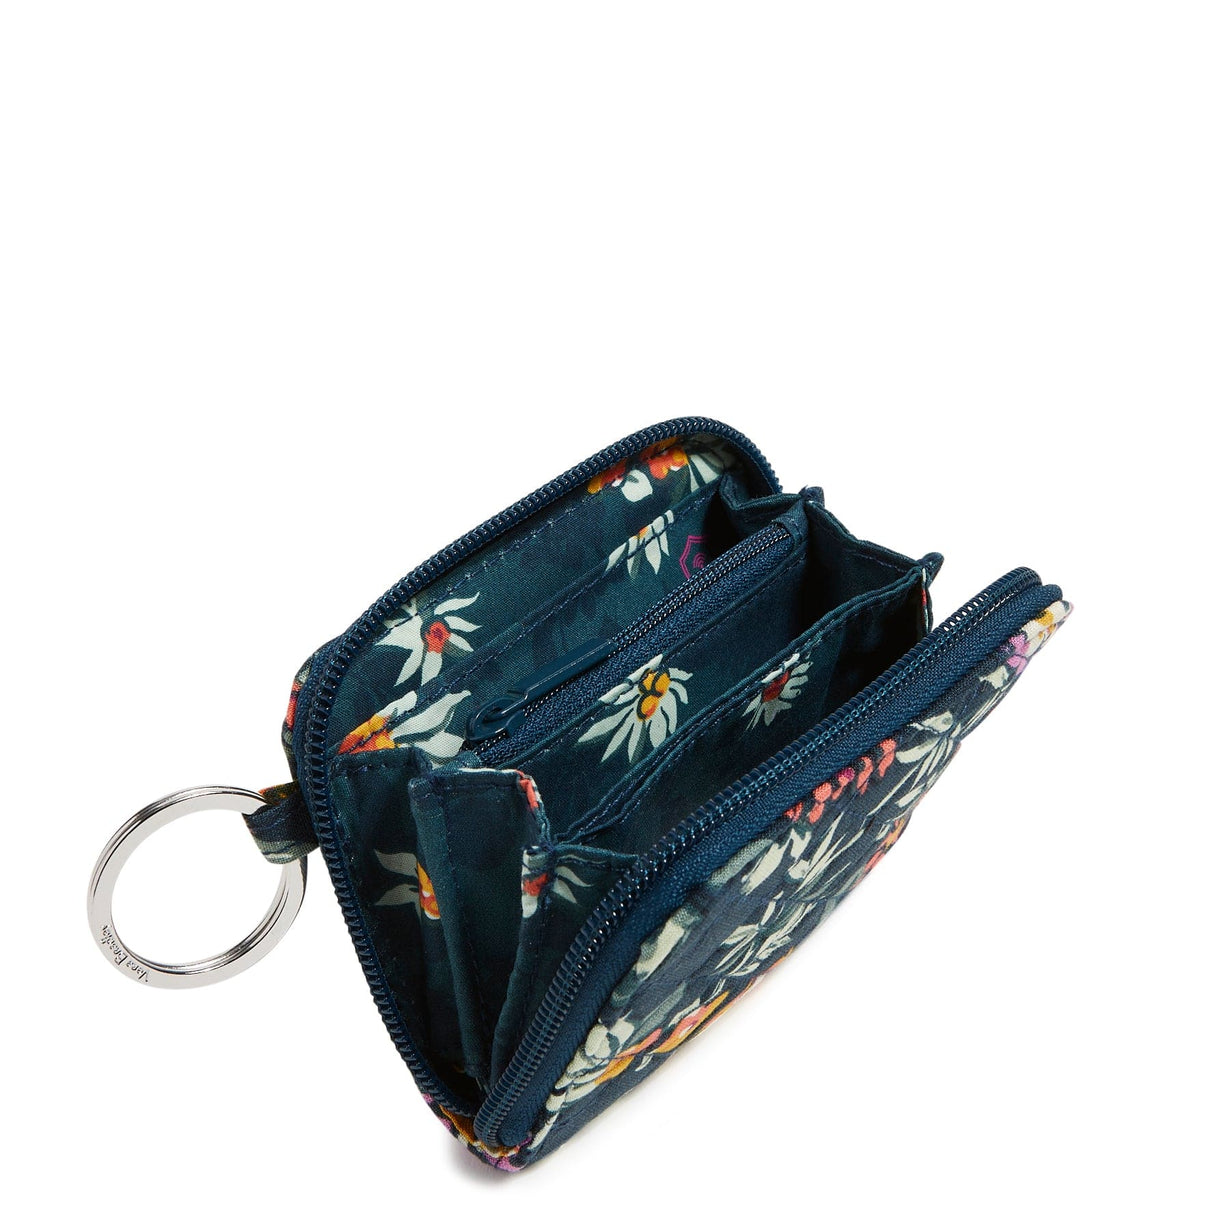 Cath Kidston Rosali fabric design purse - Folksy